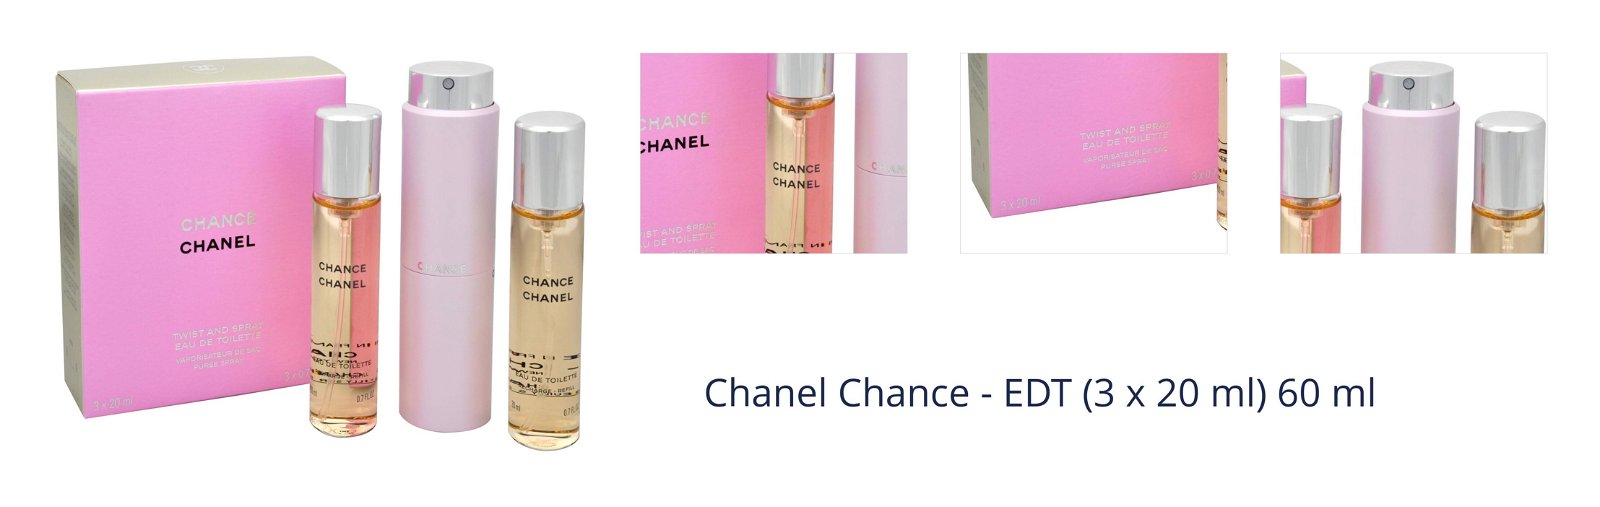 Chanel Chance - EDT (3 x 20 ml) 60 ml 1